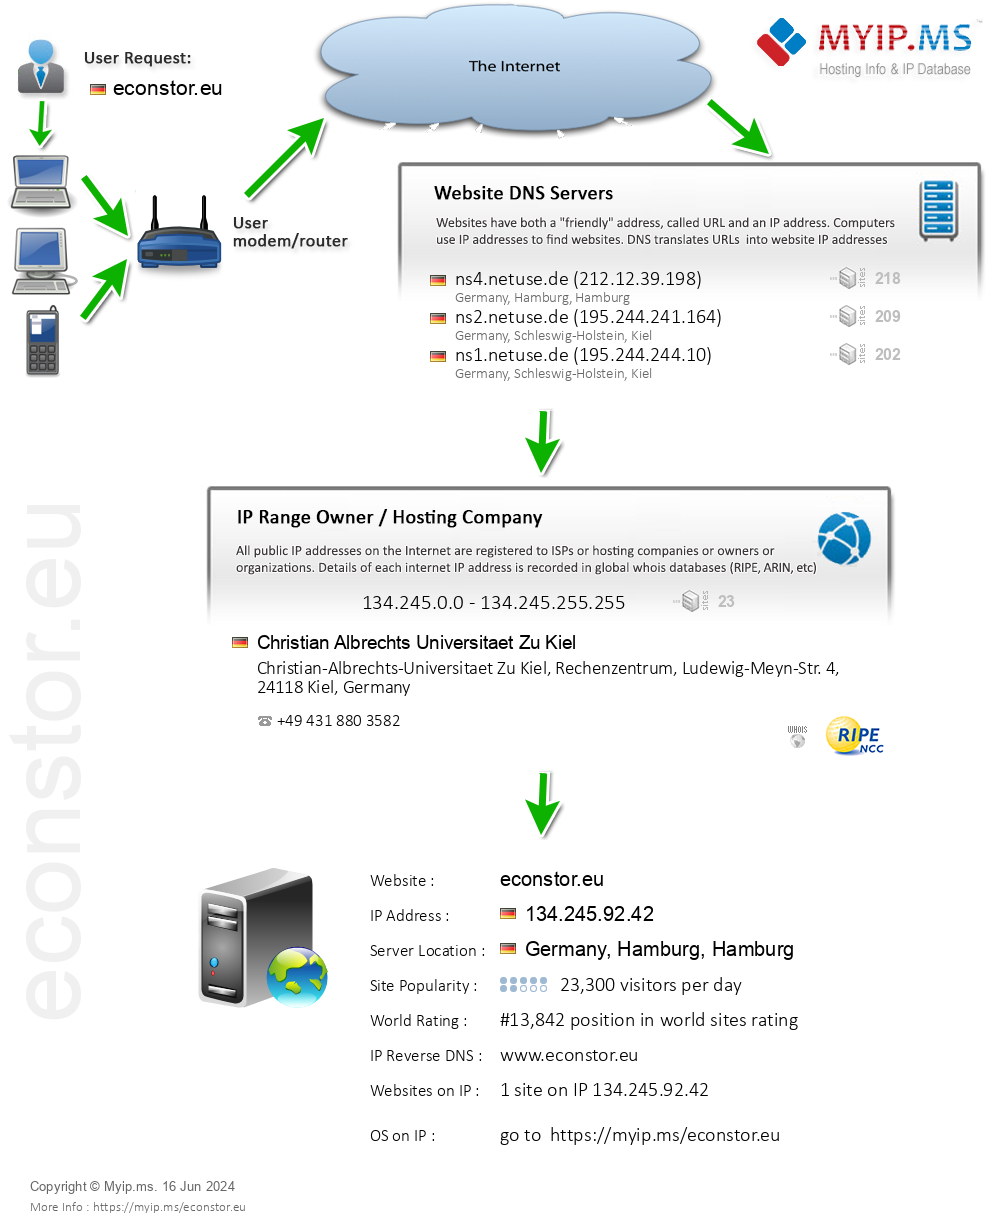 Econstor.eu - Website Hosting Visual IP Diagram